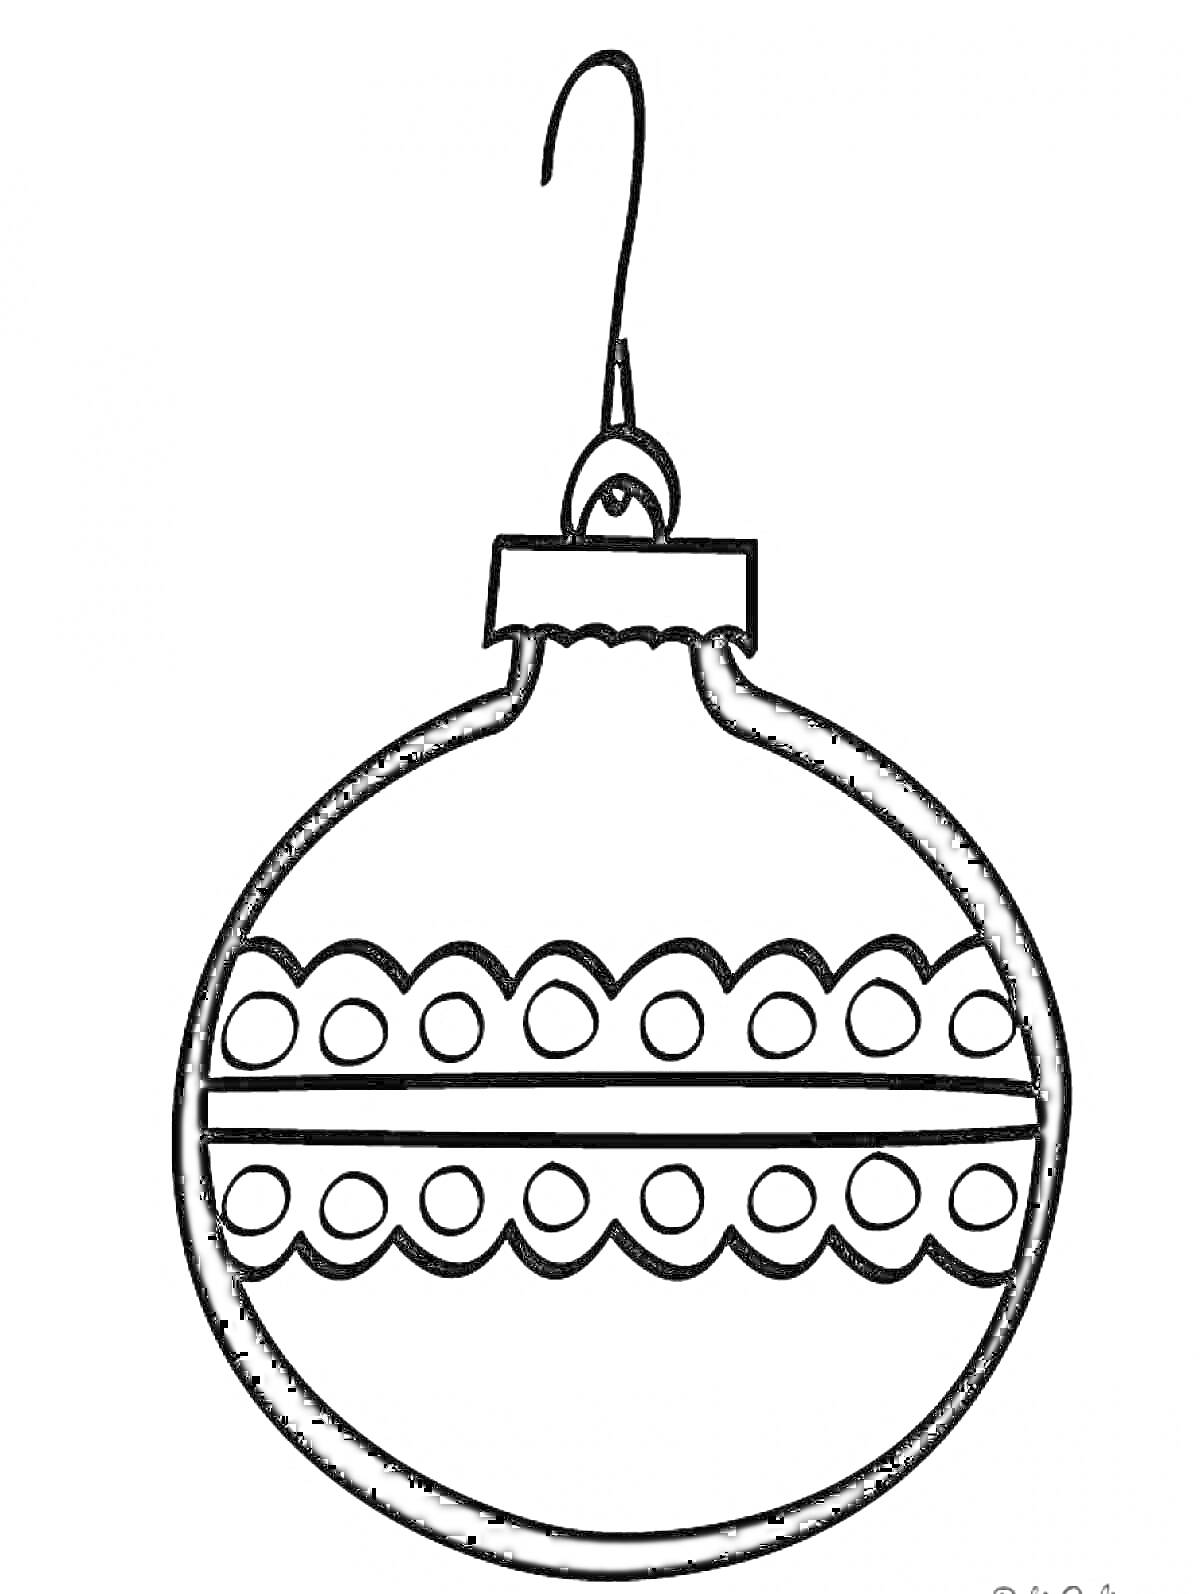 Раскраска Елочный шарик с узором из двух рядов кружков и волнистых линий